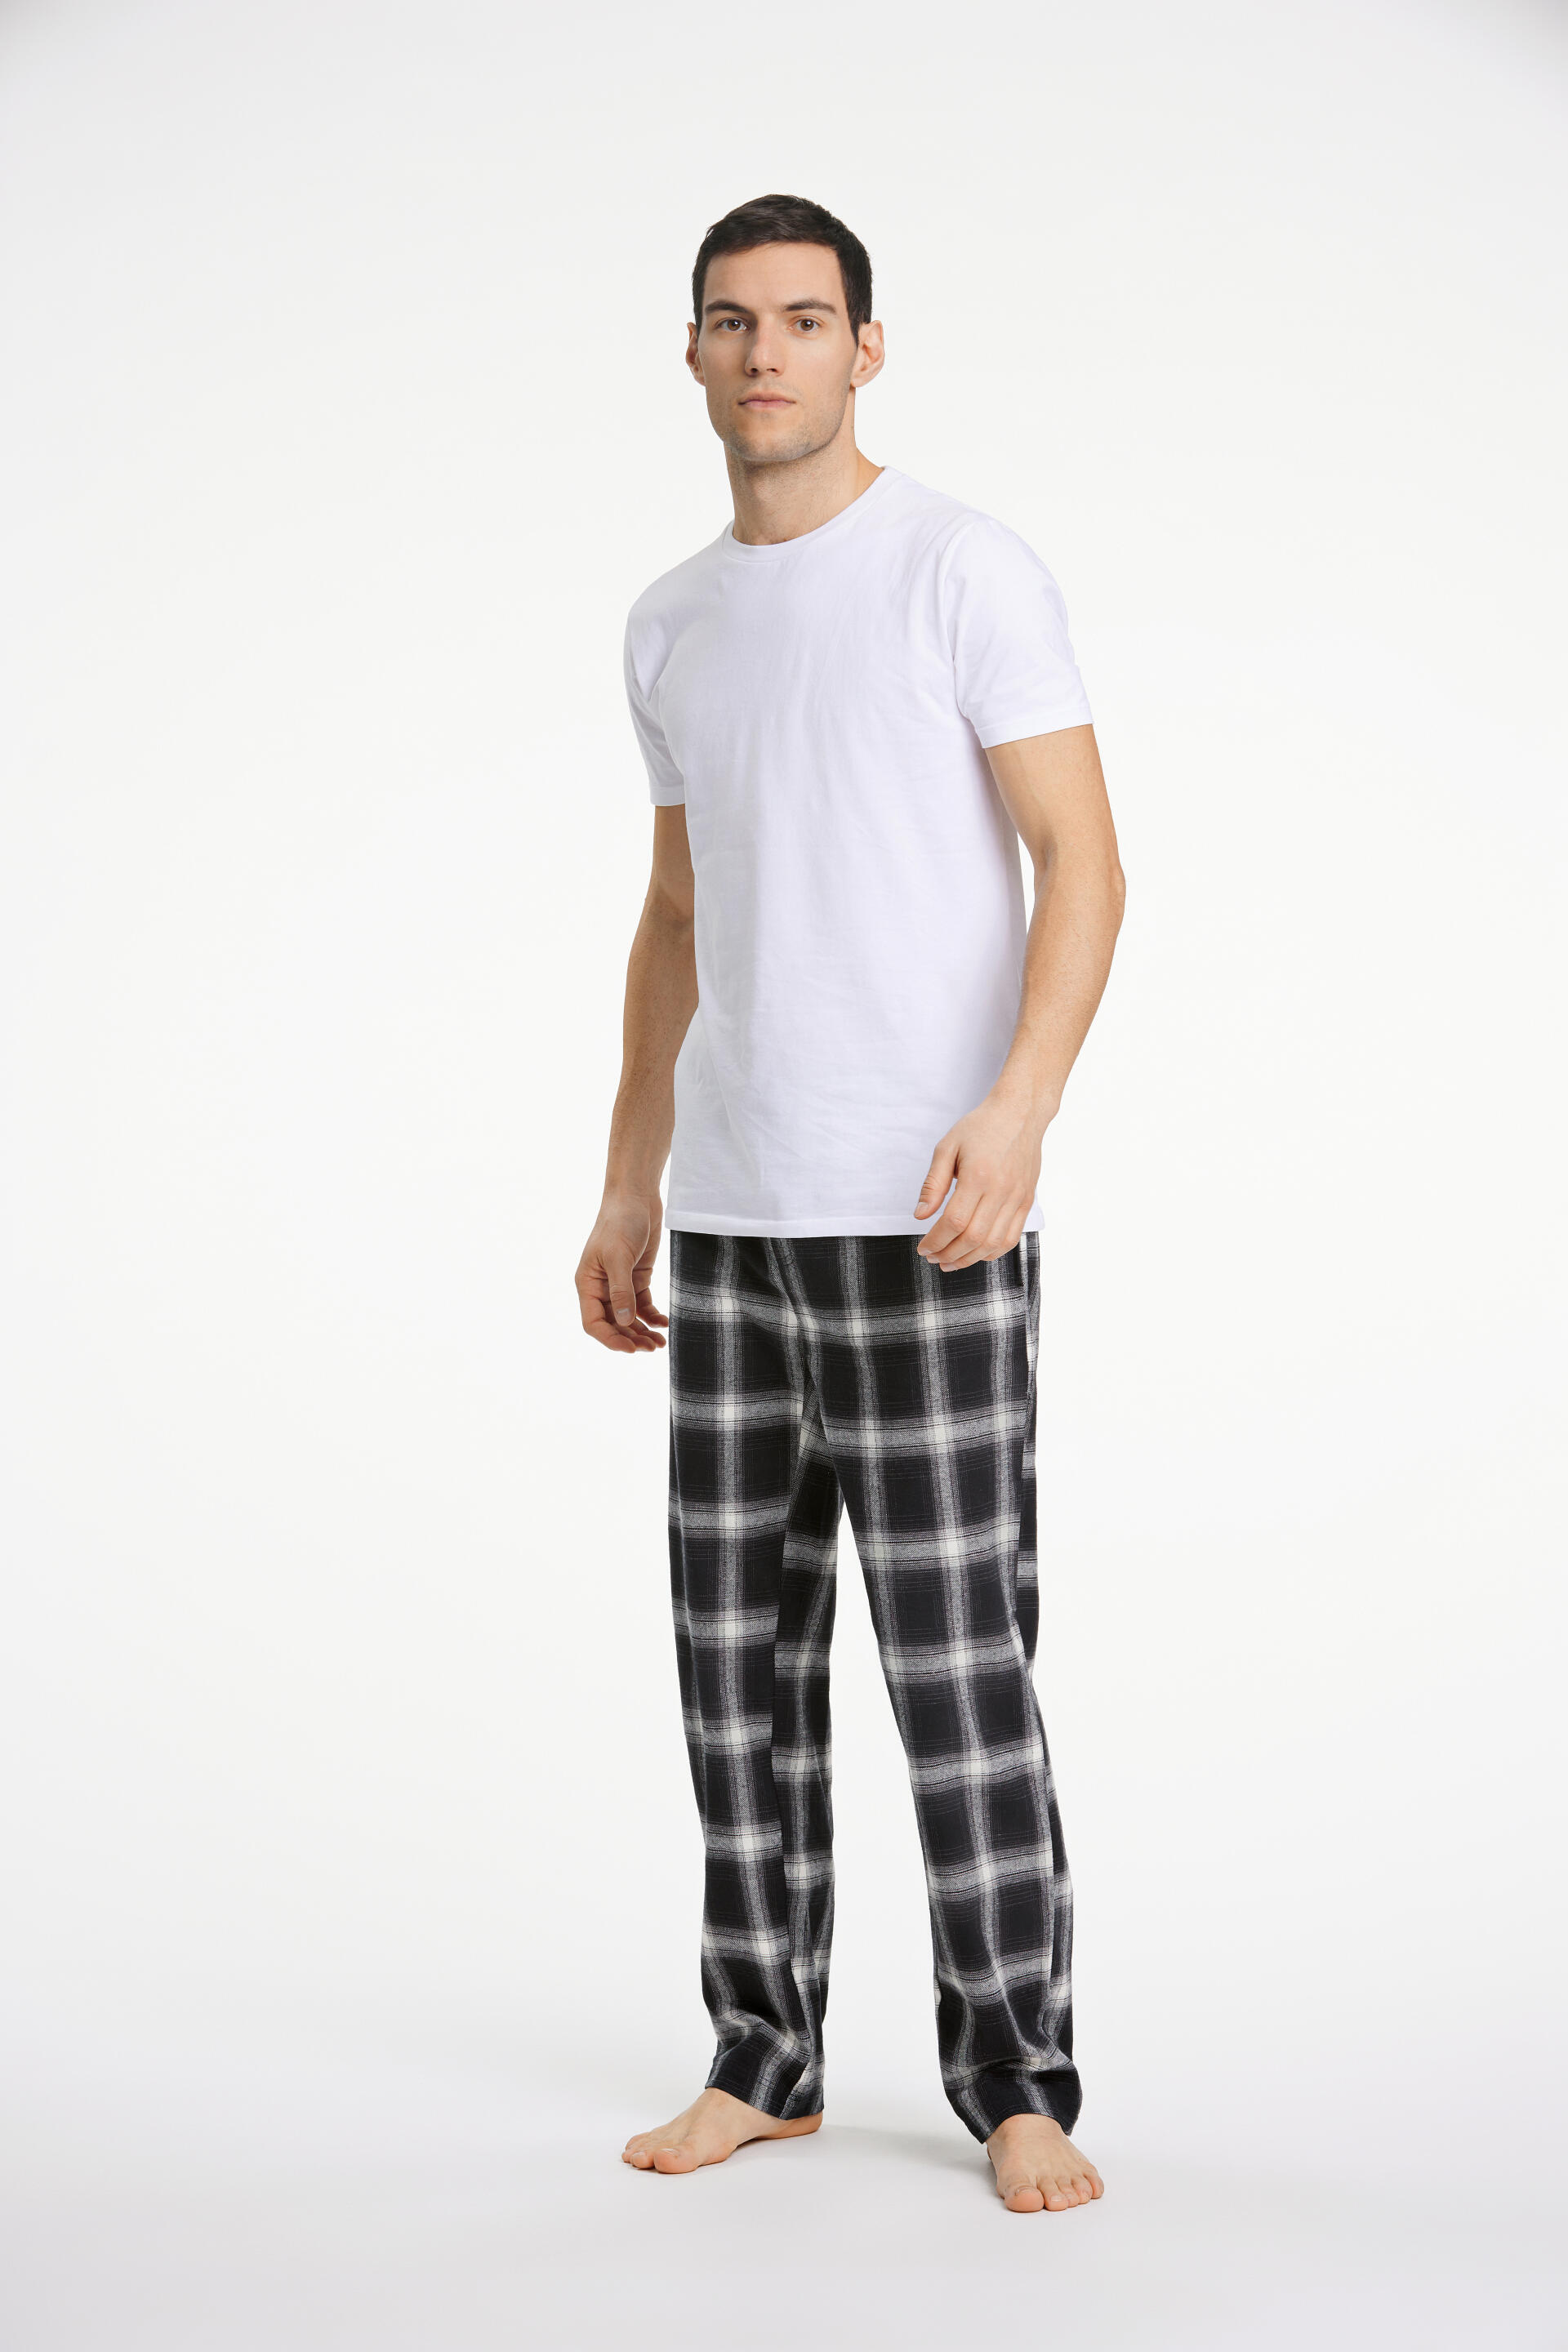 Lindbergh  Pyjamas 30-997510